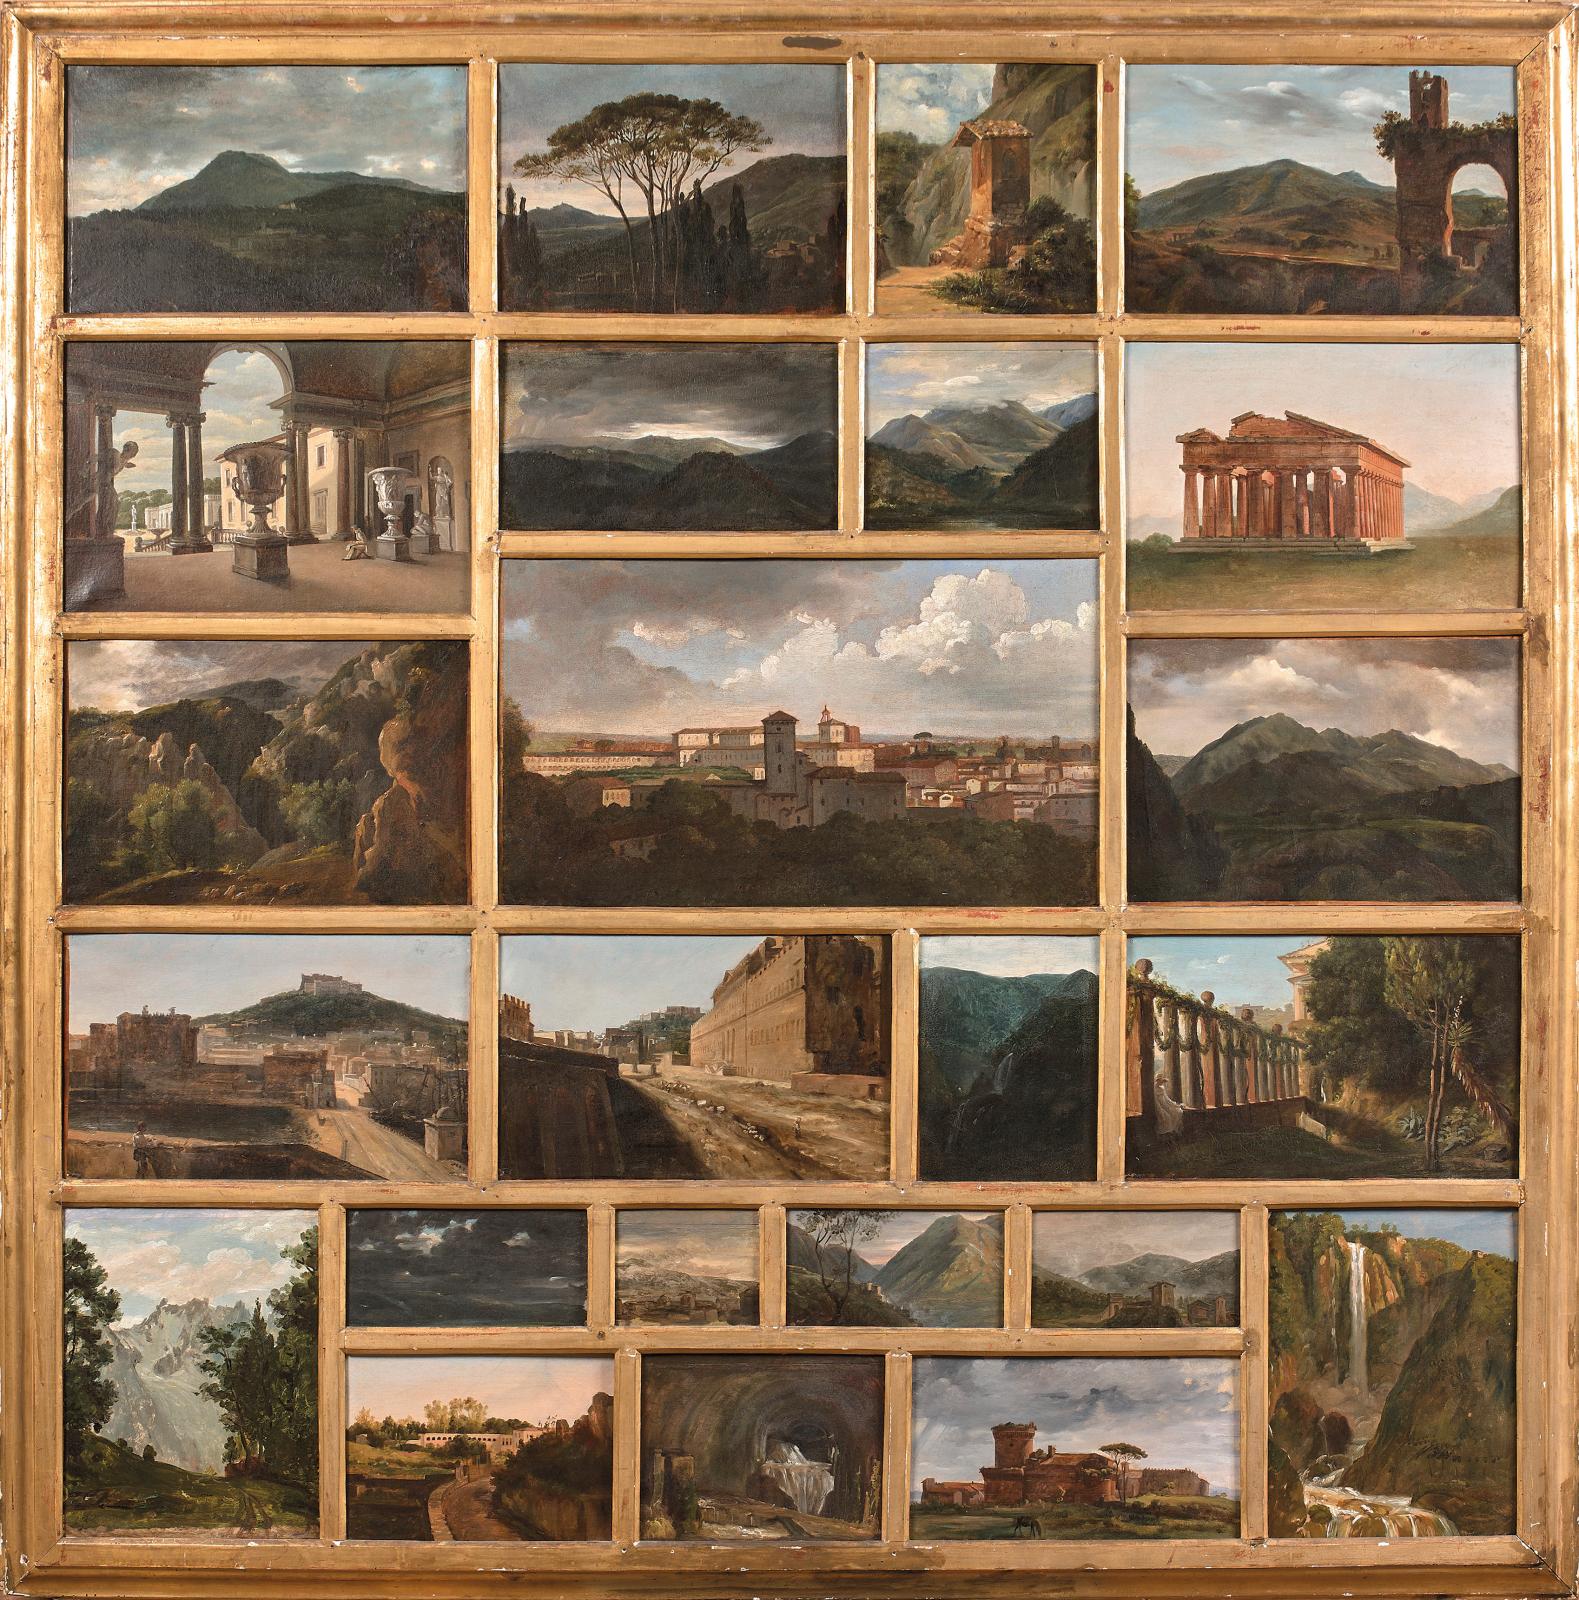 24 views of Italy by Jean-Baptiste Vinchon in various sizes, the central one by Louis-Vincent-Léon Pallière (1787-1820), Vue du quartier d